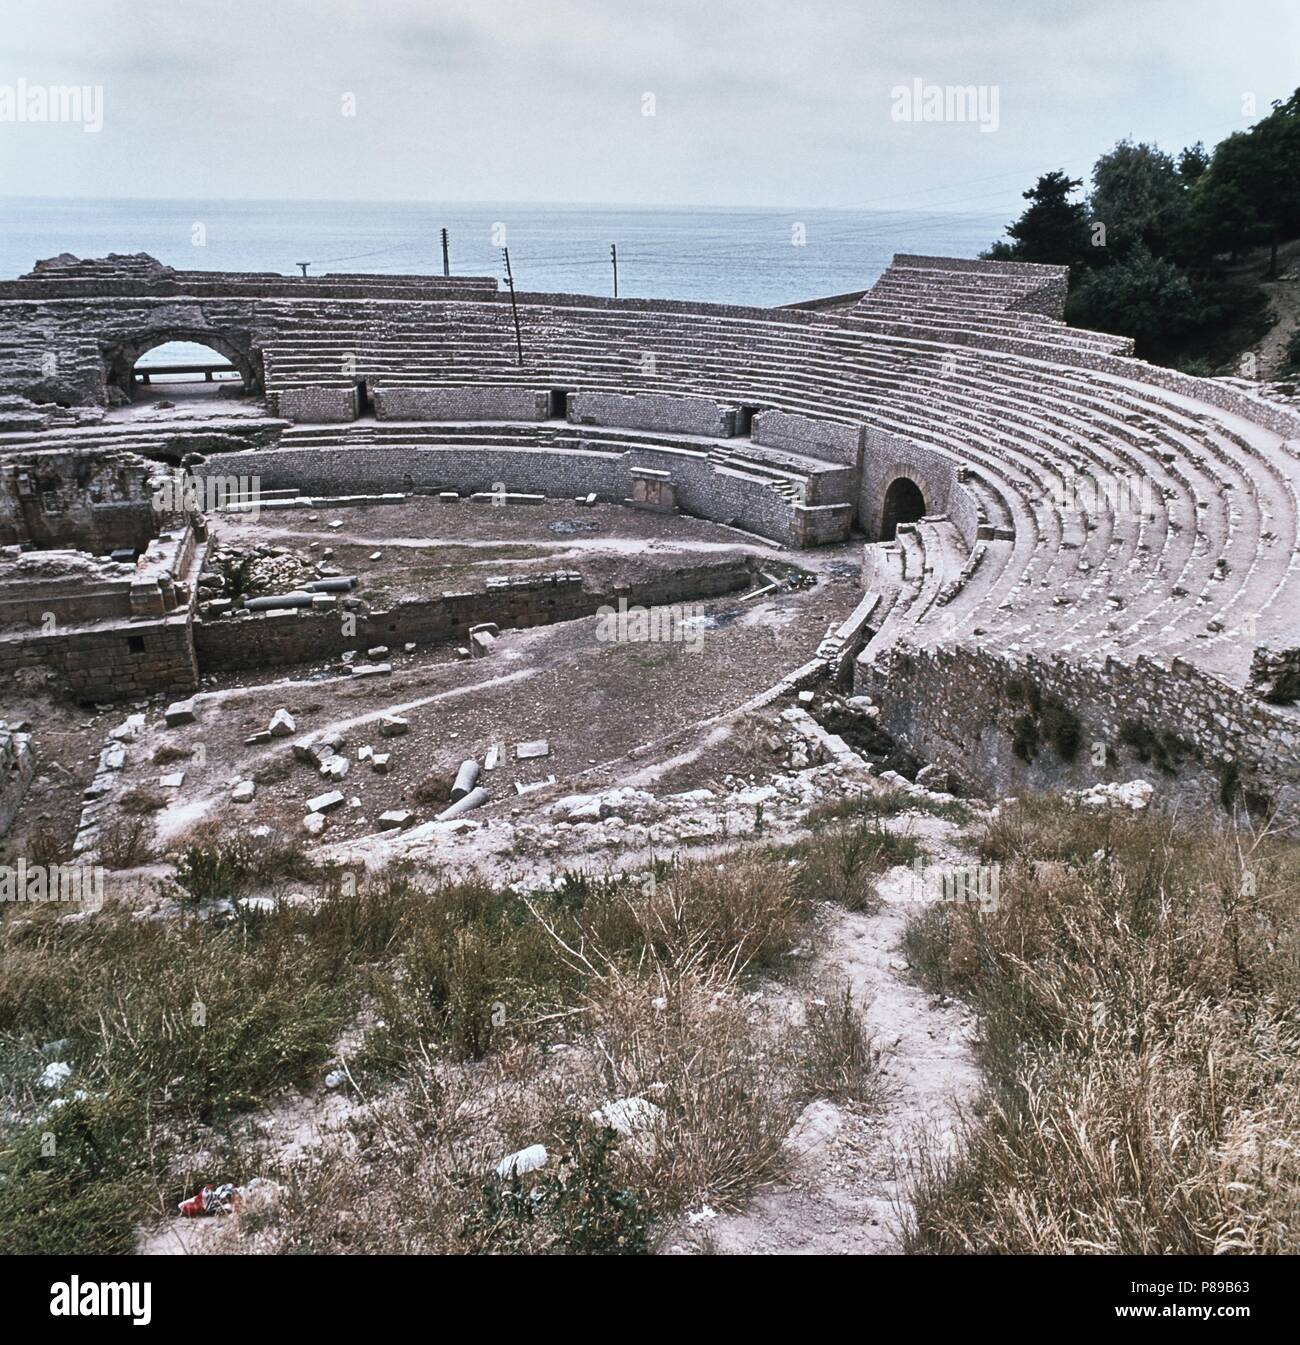 Anfiteatro romano. Vista parcial de las ruinas.Tarragona, siglo II-III. Stock Photo